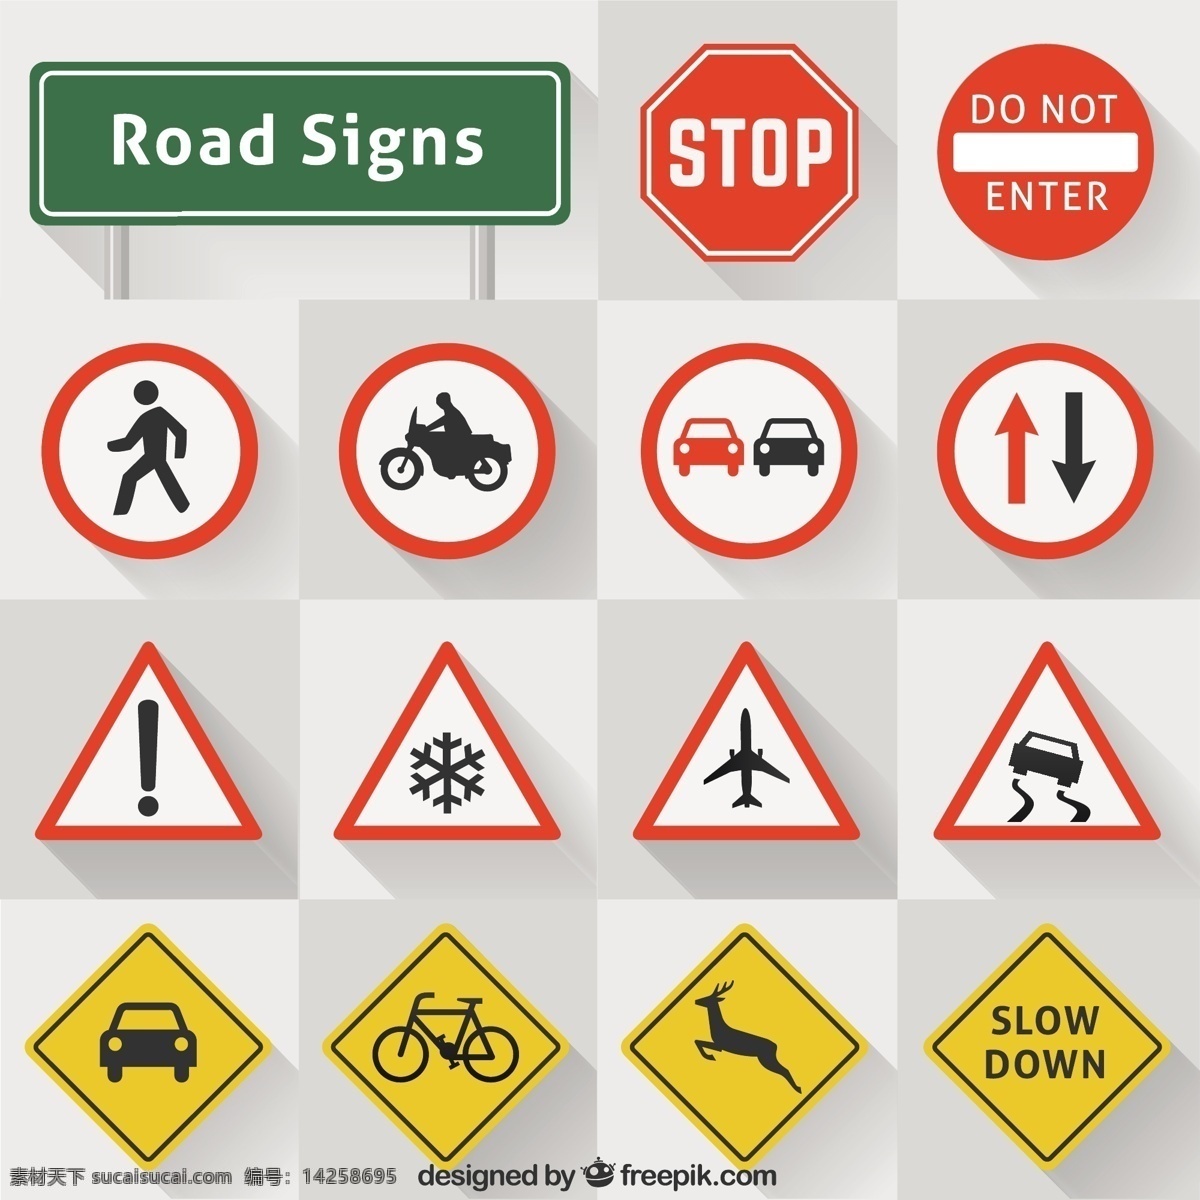 道路标志集合 道路 标志 交通 道路标志 停车 警告 公路 交通标志 停车标志 收集 指示 禁止 白色